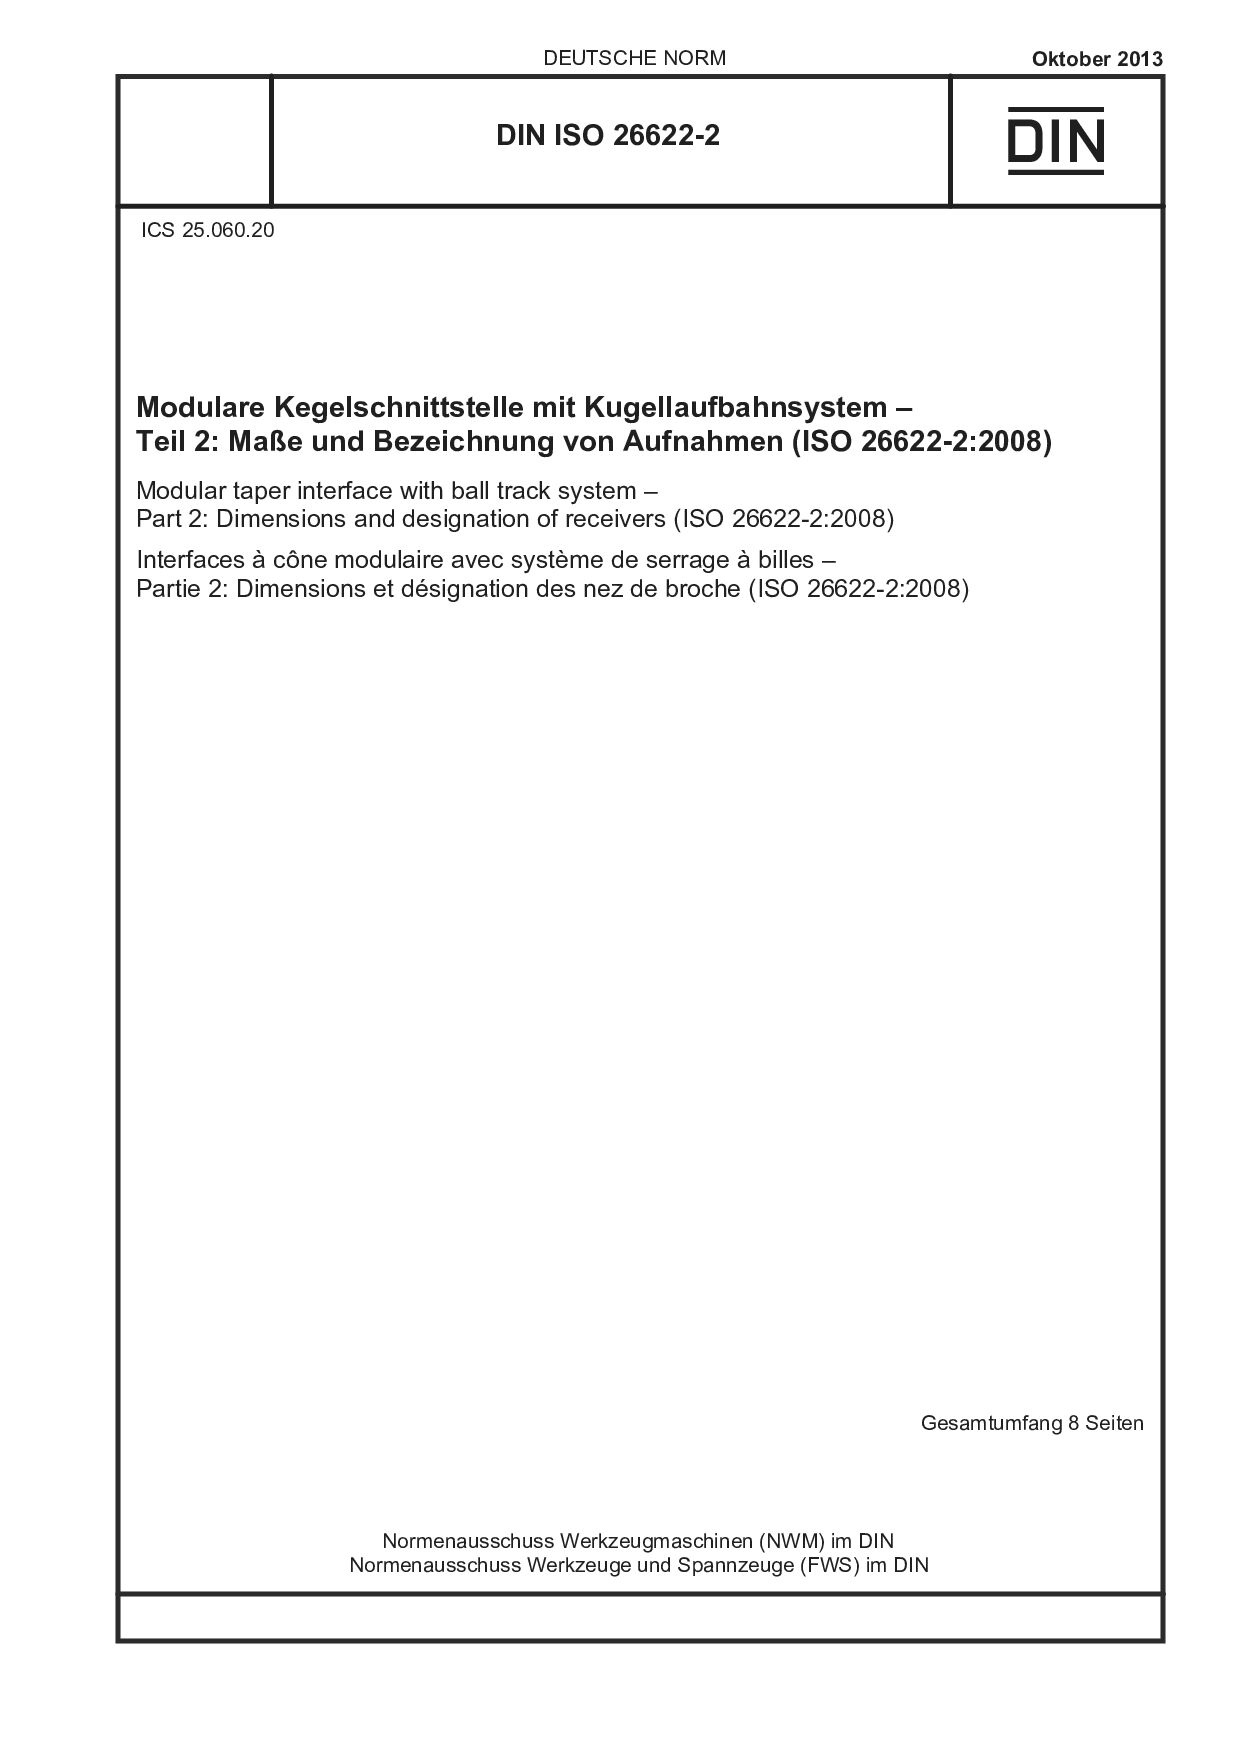 DIN ISO 26622-2:2013封面图